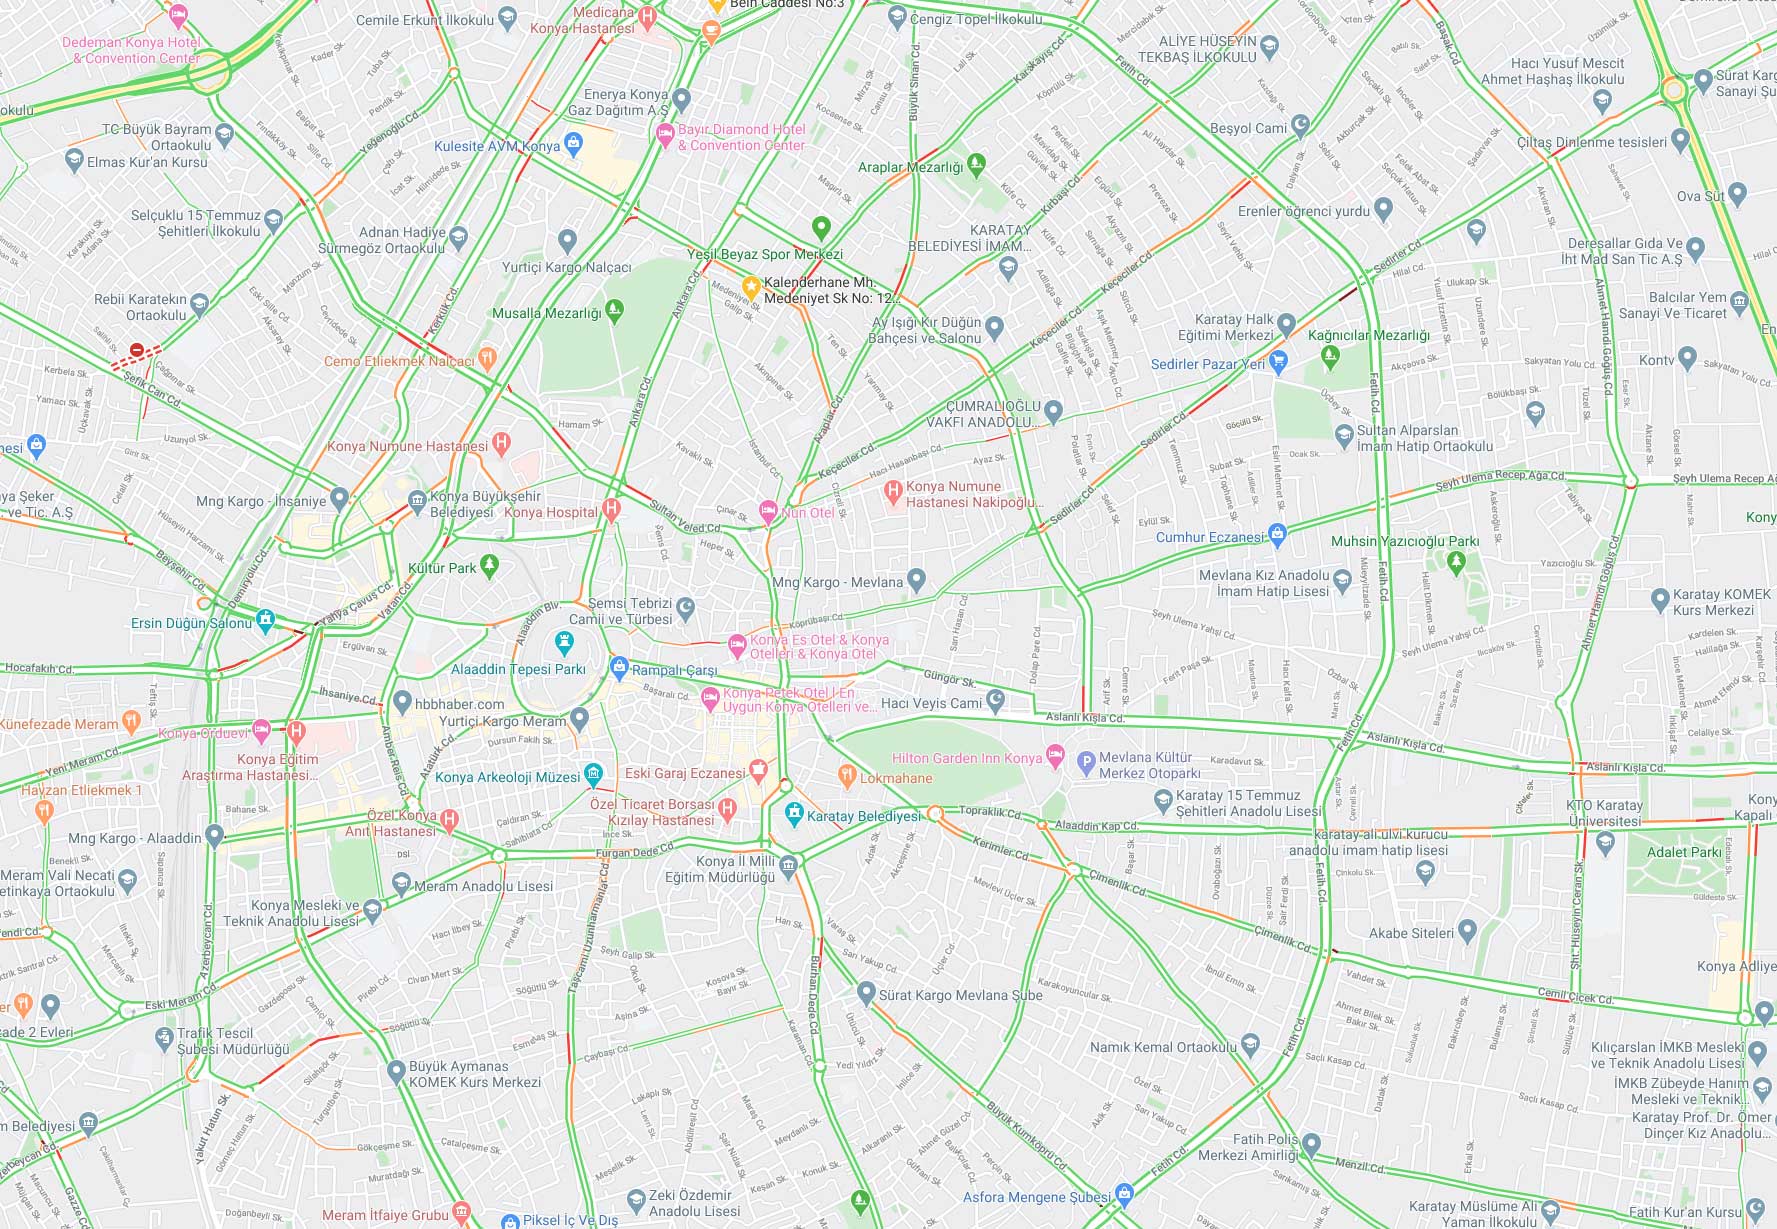 konya-genel-trafik-durumu-haritasi.jpg